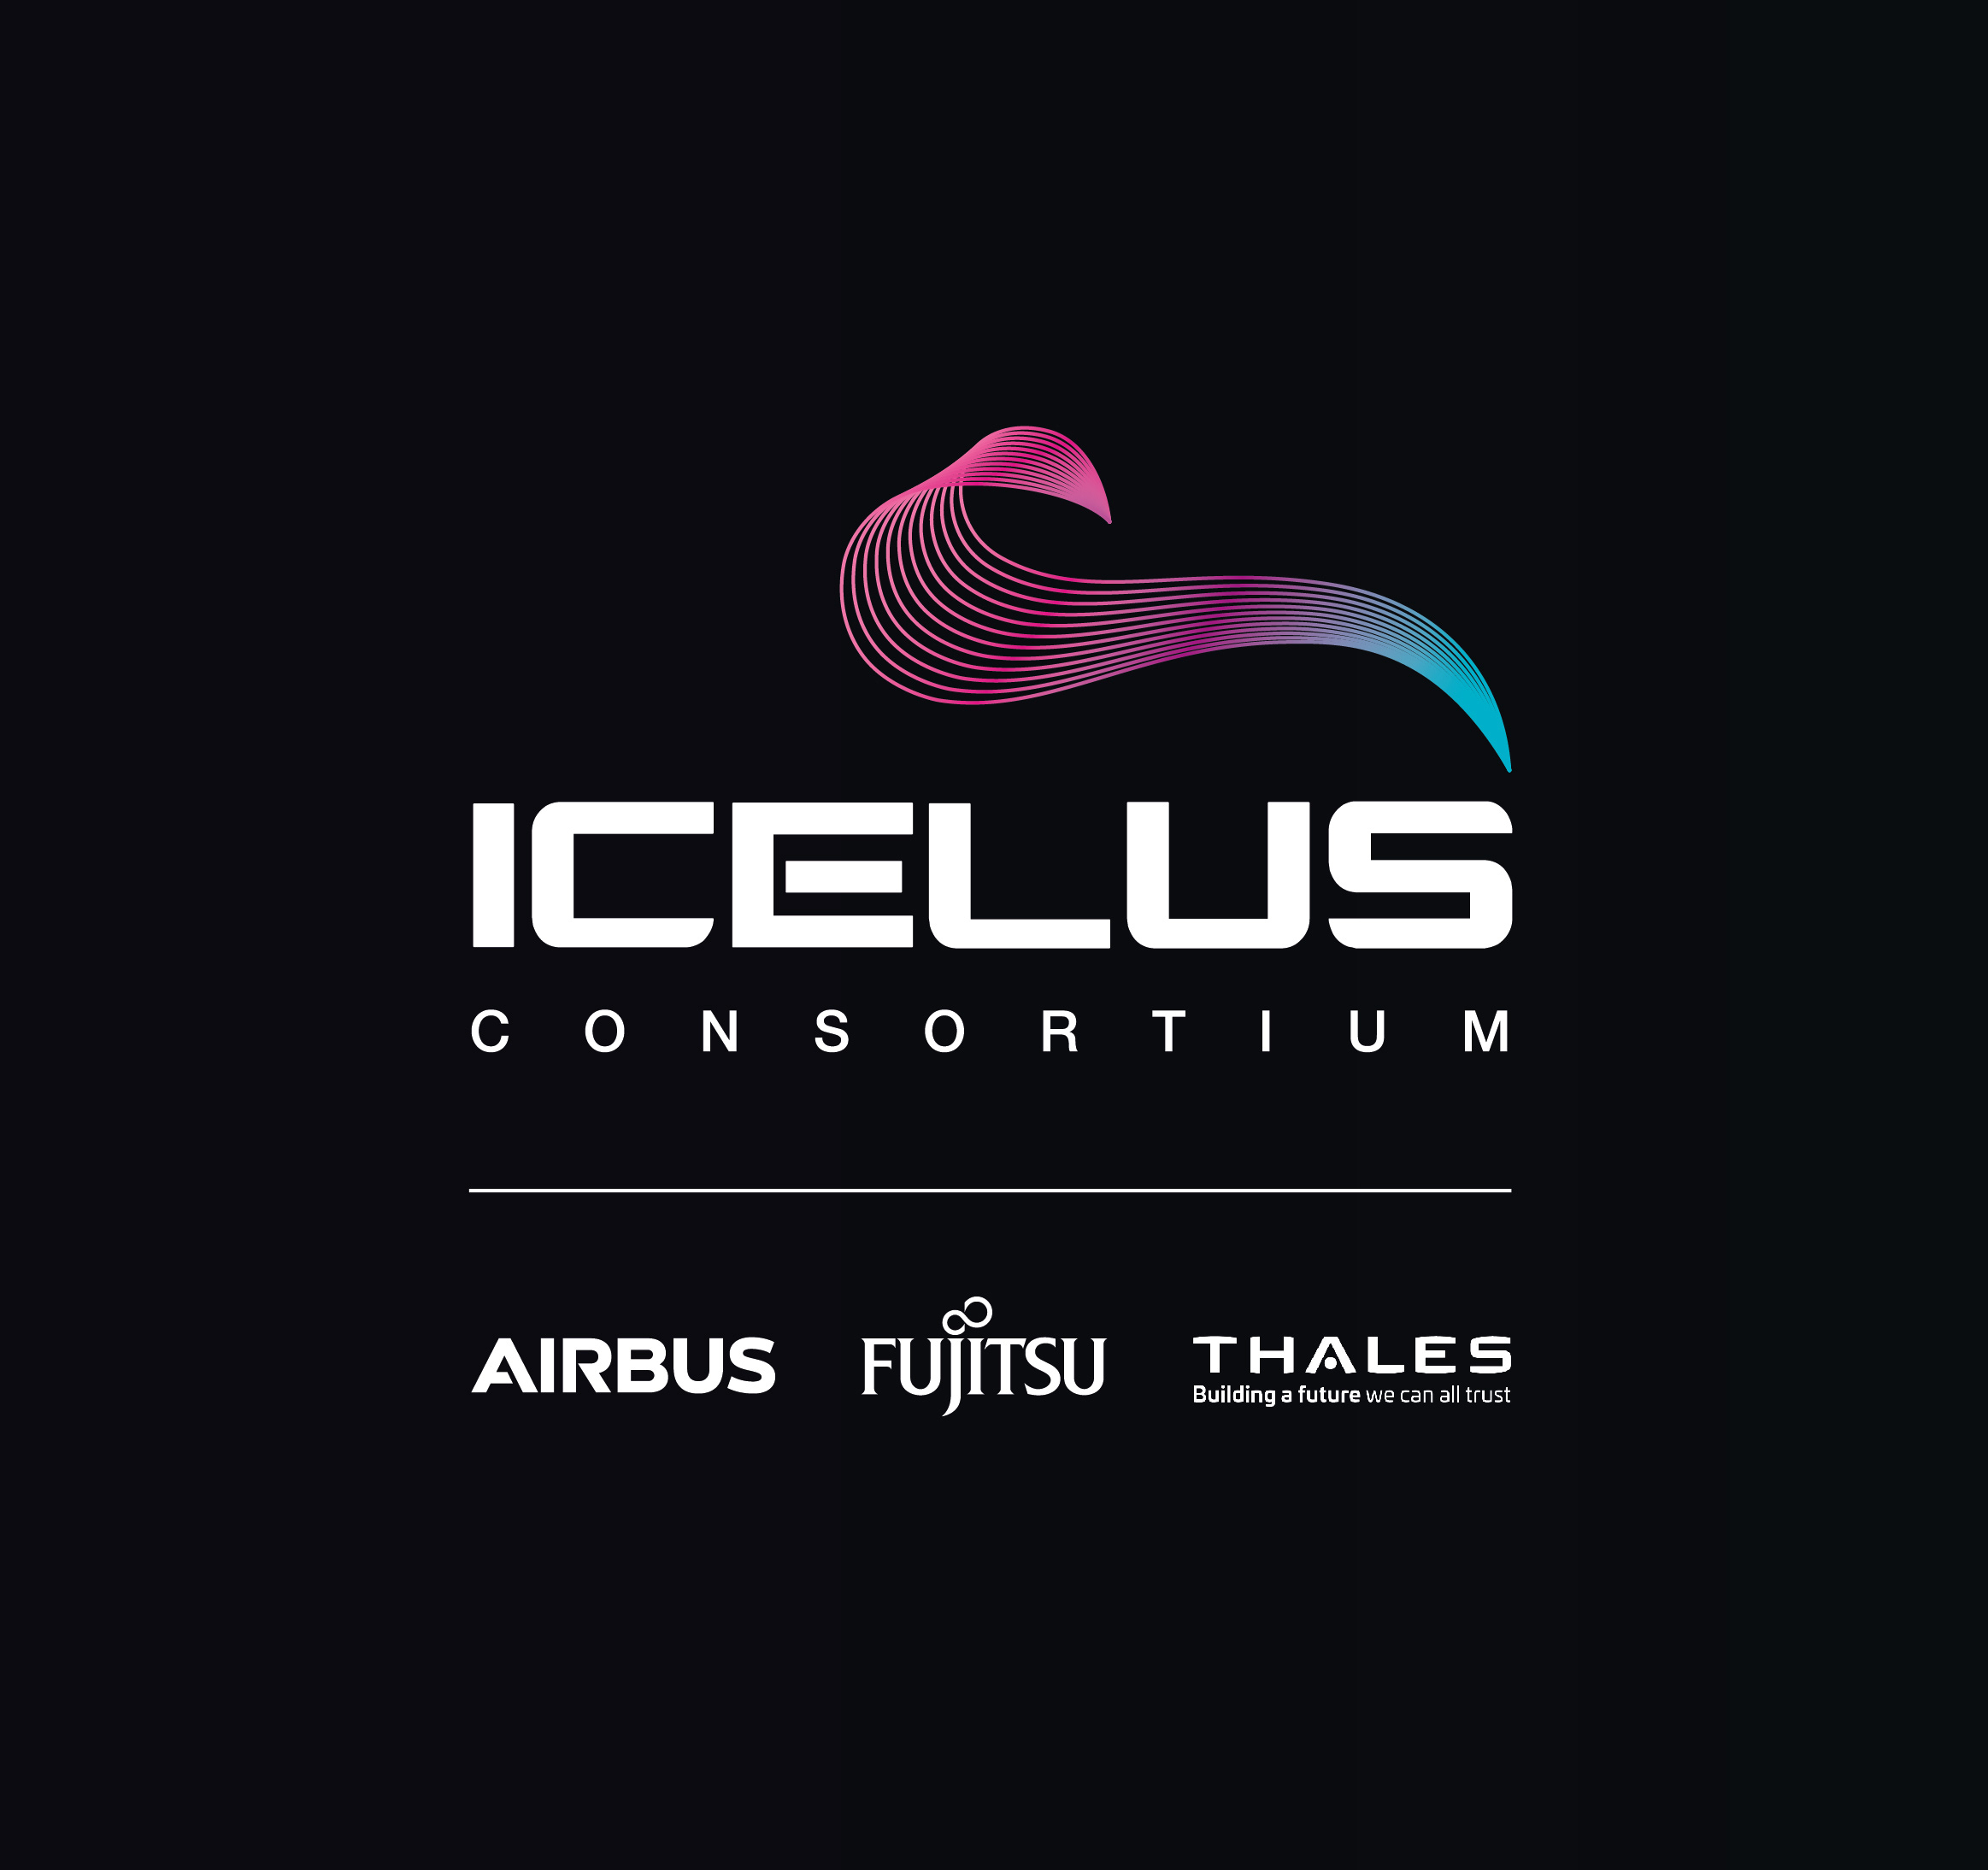 Airbus ICELUS Consortium